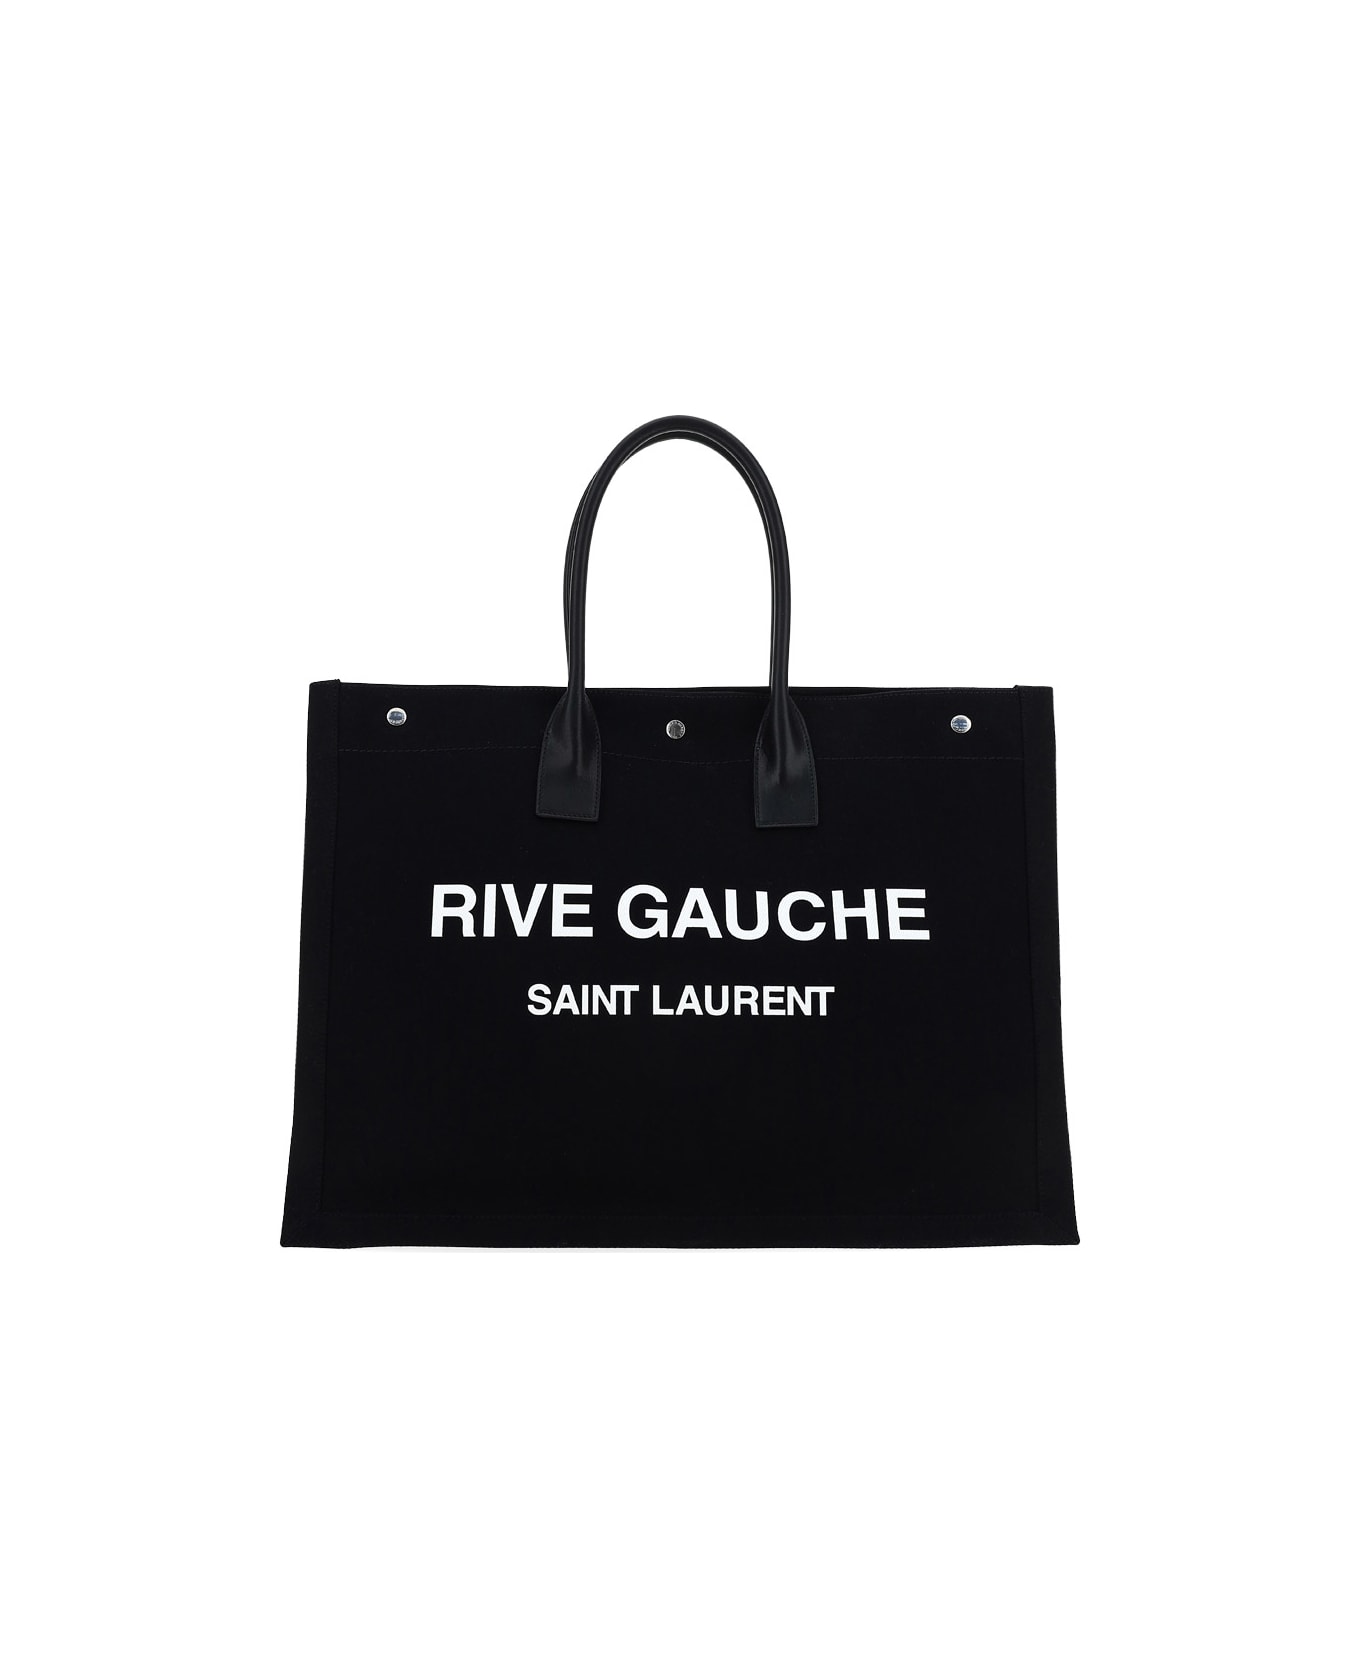 Saint Laurent Rive Gauche Tote Bag - Nero/bianco/nero/n